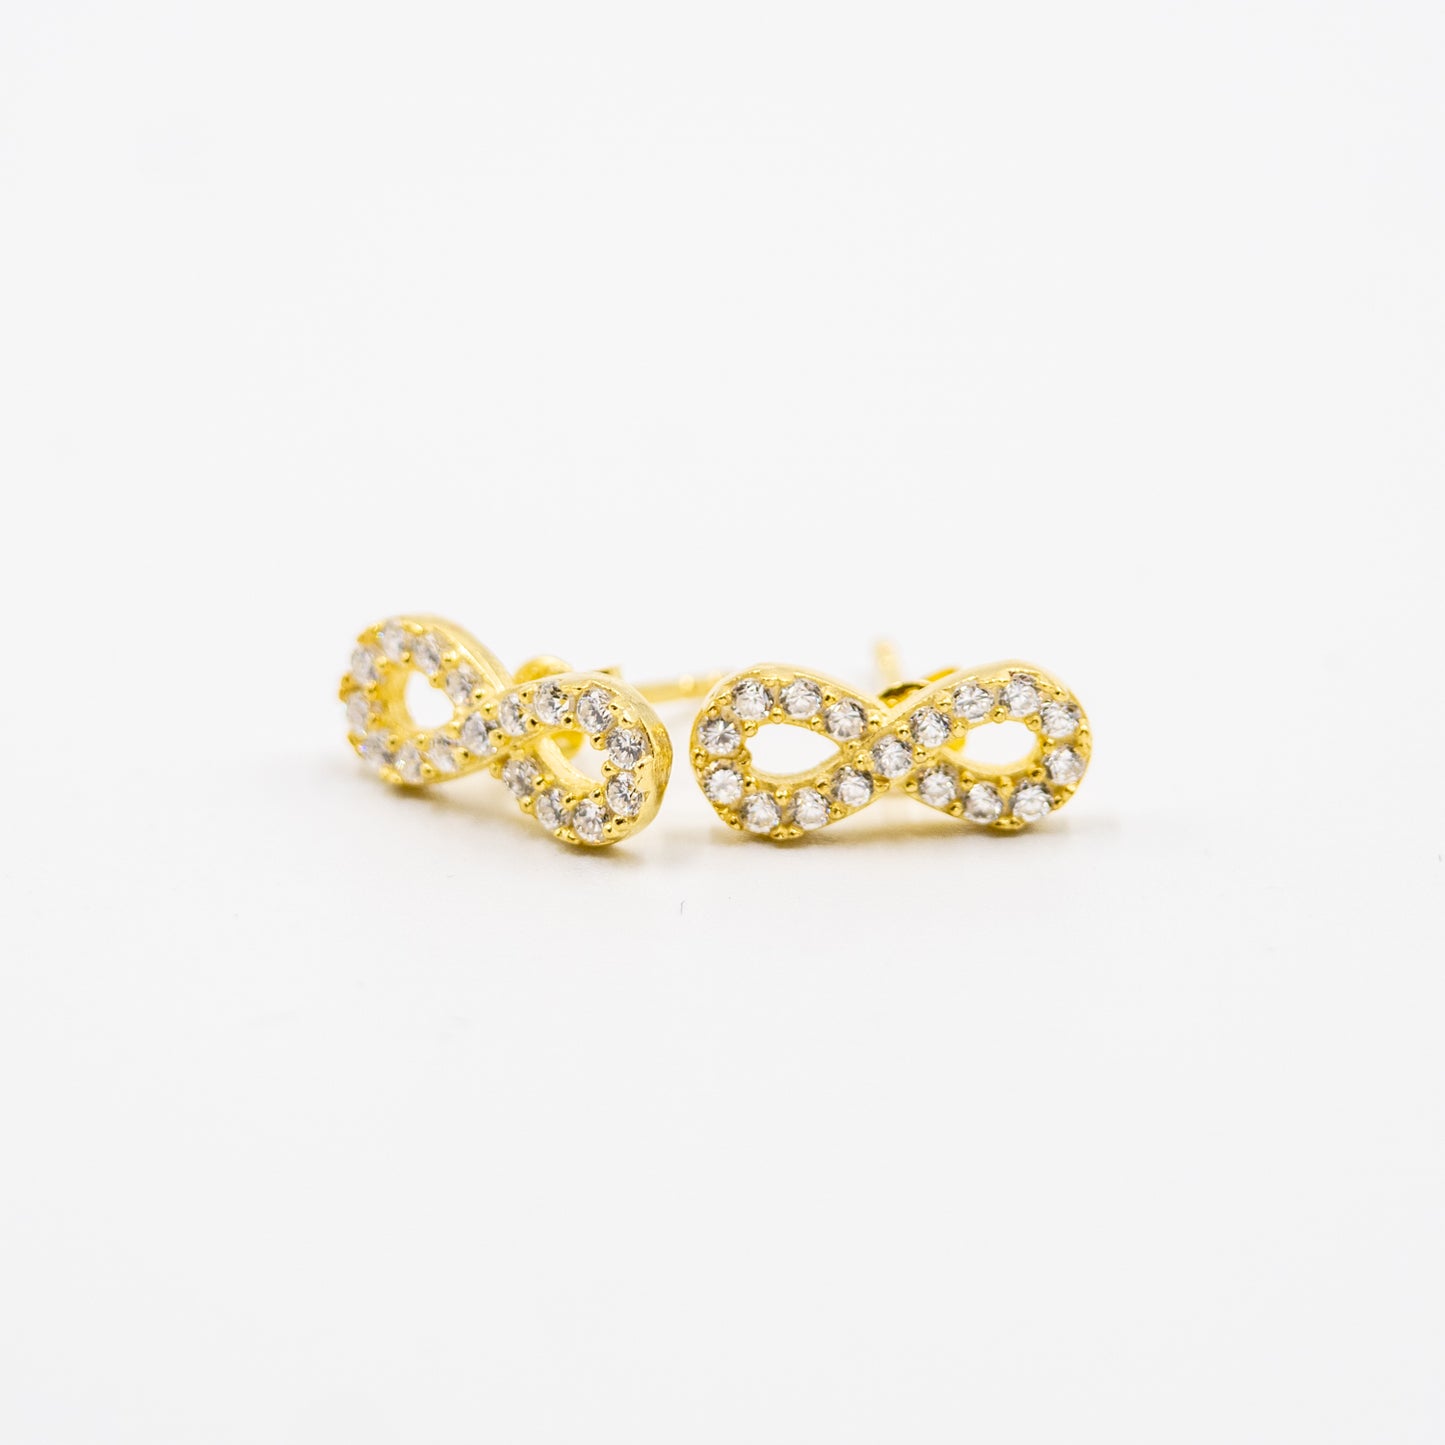 DK-925-192 sterling silver gold tone infinity earrings